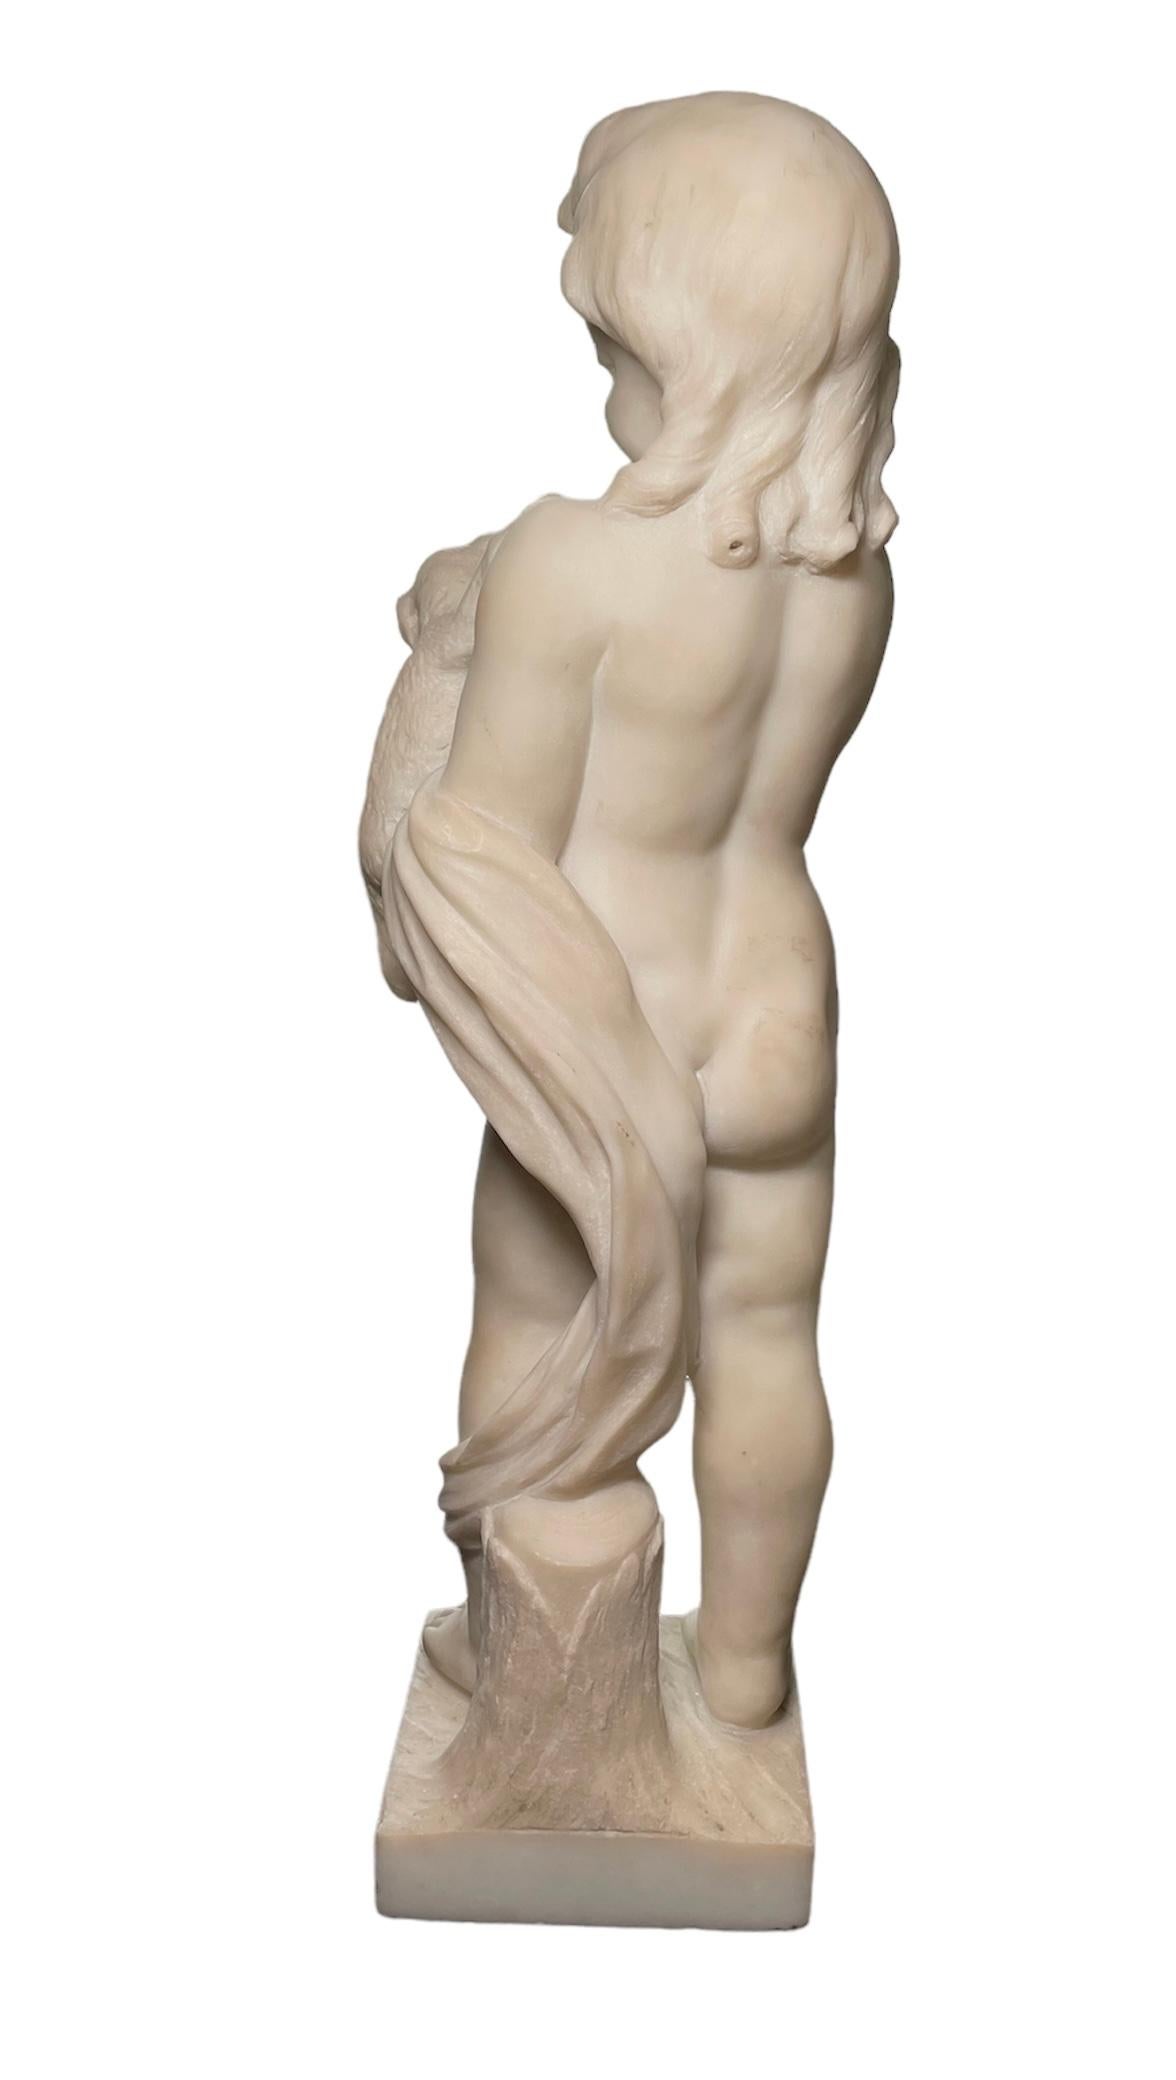 Il s'agit d'une sculpture en marbre représentant un chérubin qui se tient debout devant un tronc. Sa tête a une abondante chevelure aux extrémités bouclées. Il tient délicatement un chiot. La sculpture est fixée sur une base carrée en albâtre.